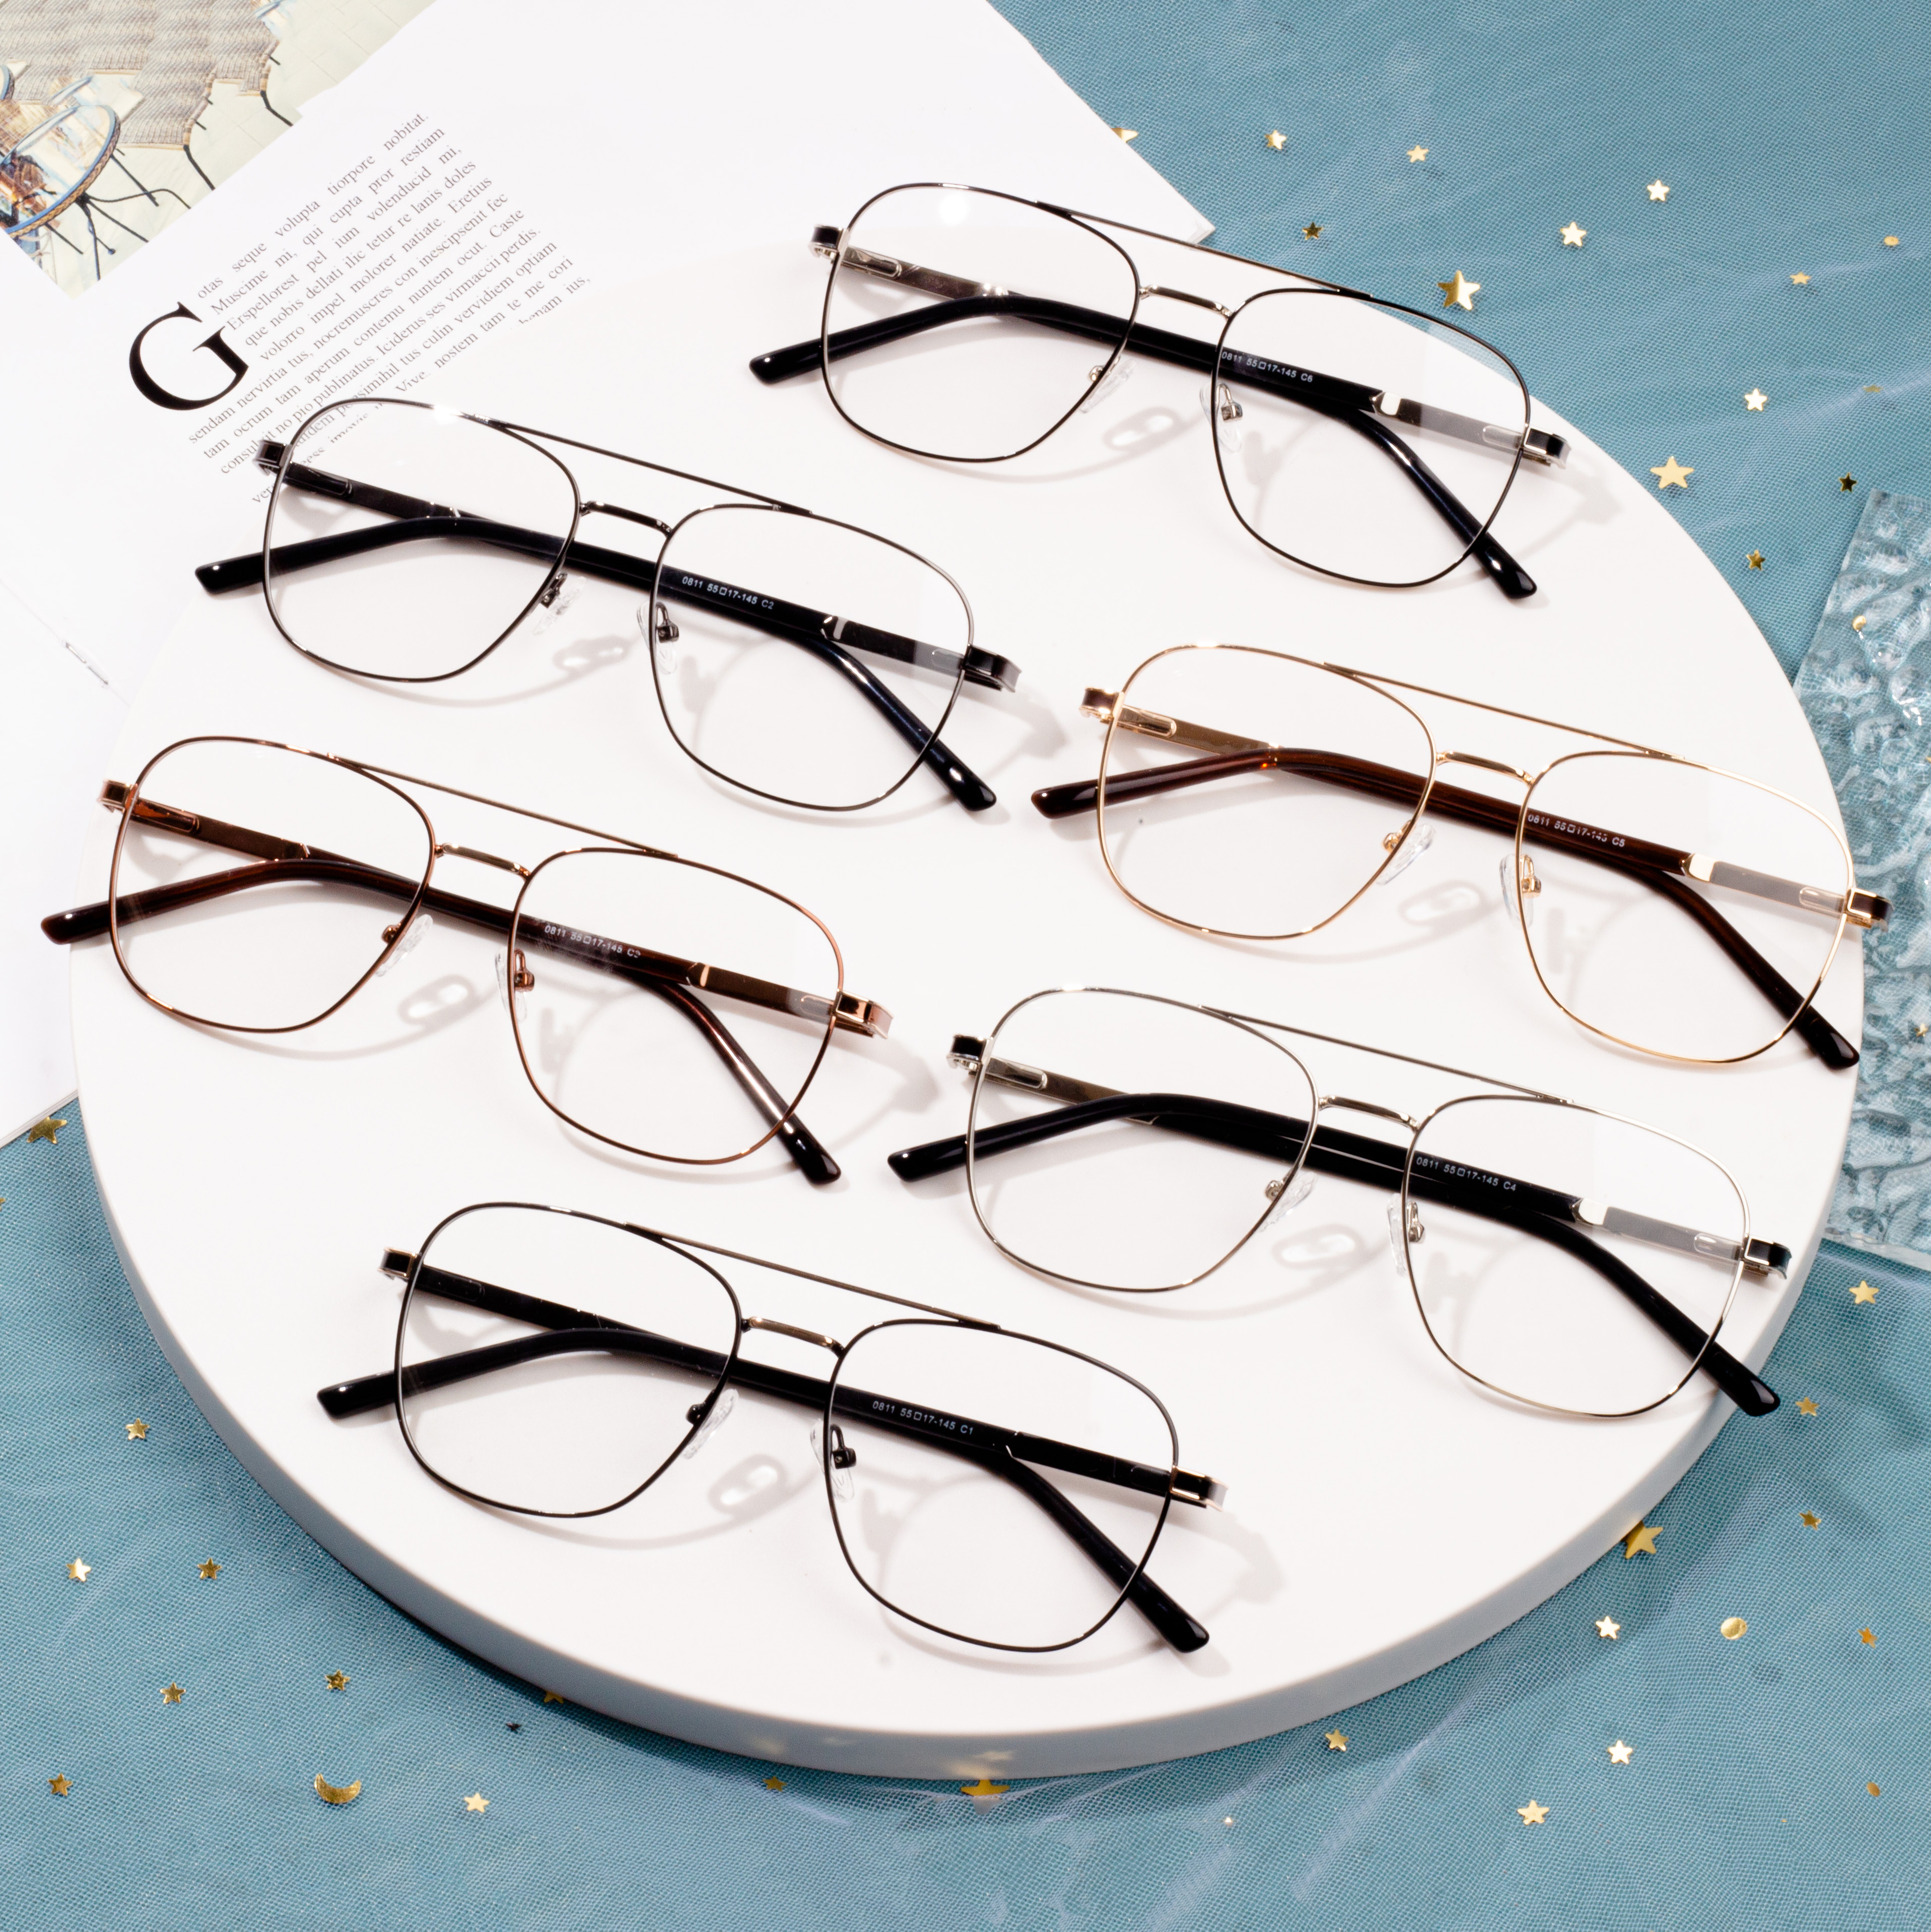 I-Hot Sales Square Frames eyeglass